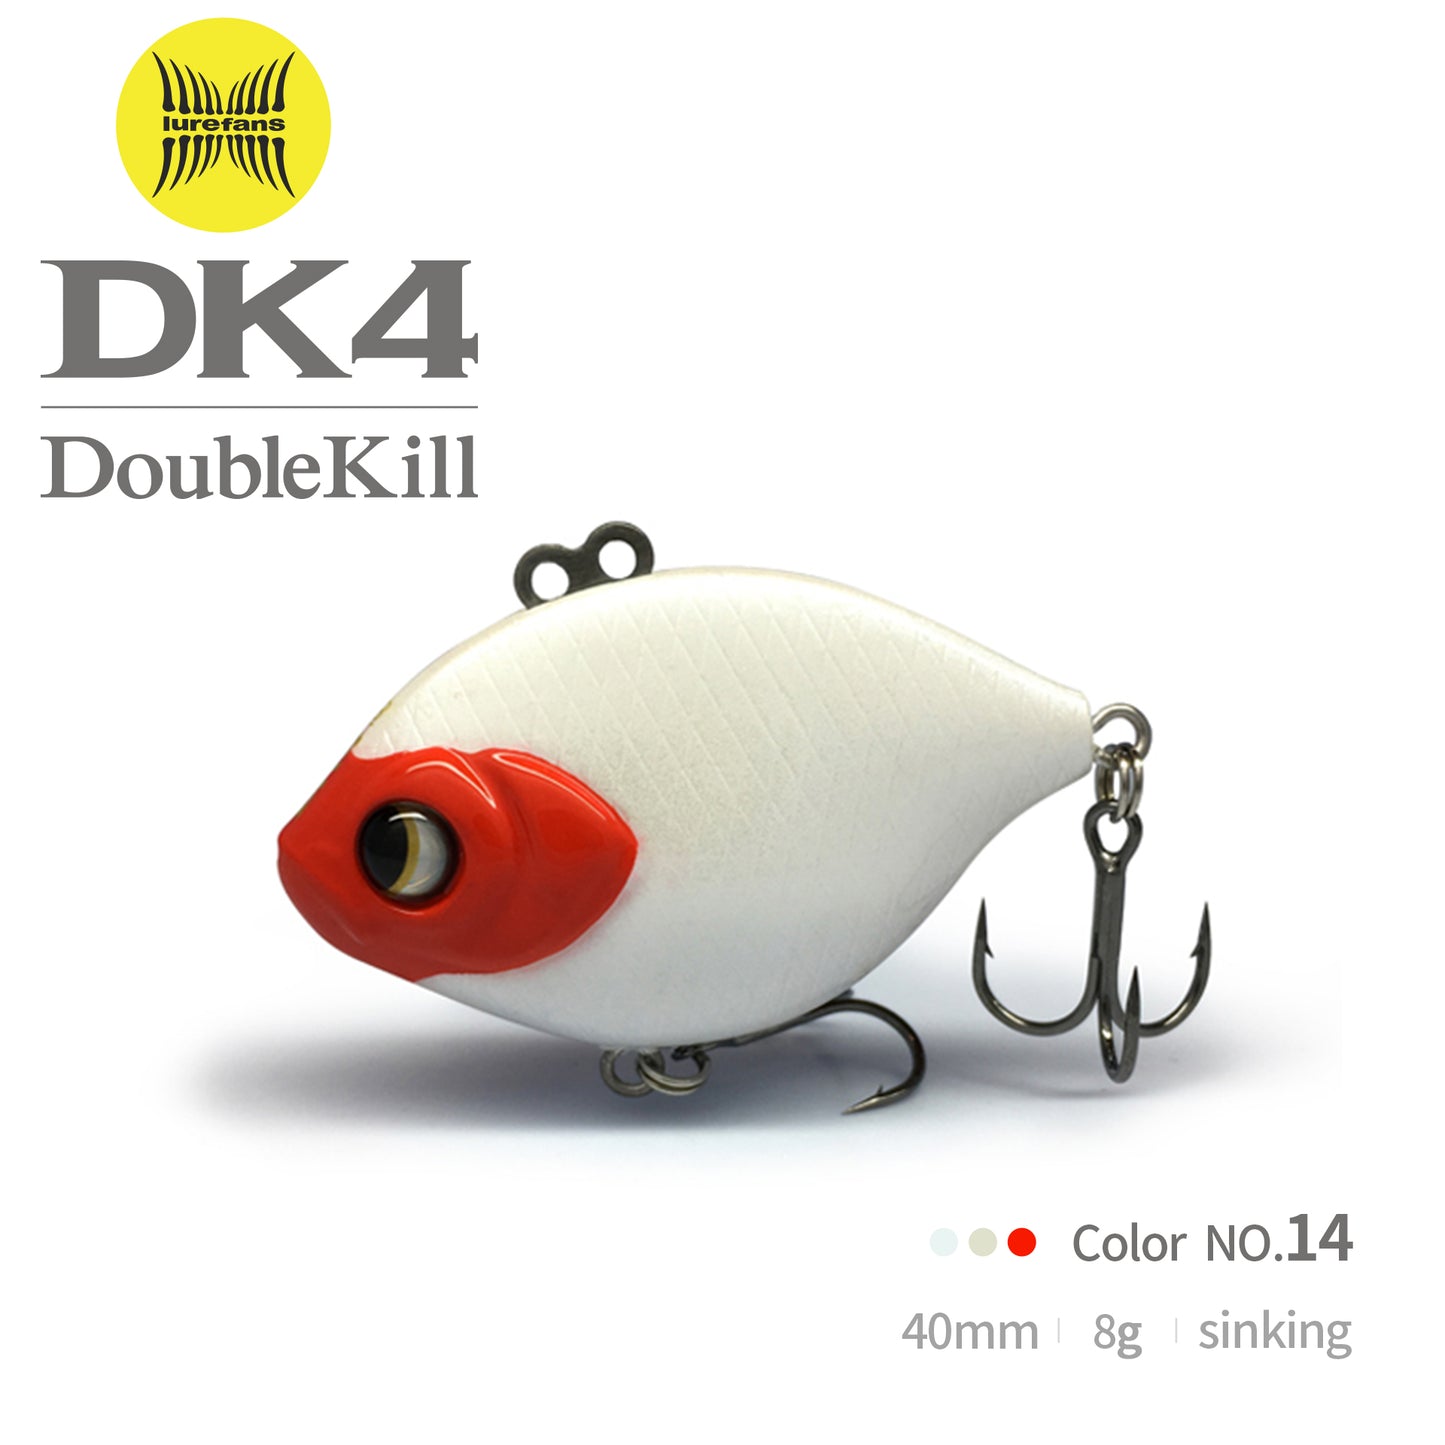 DK4